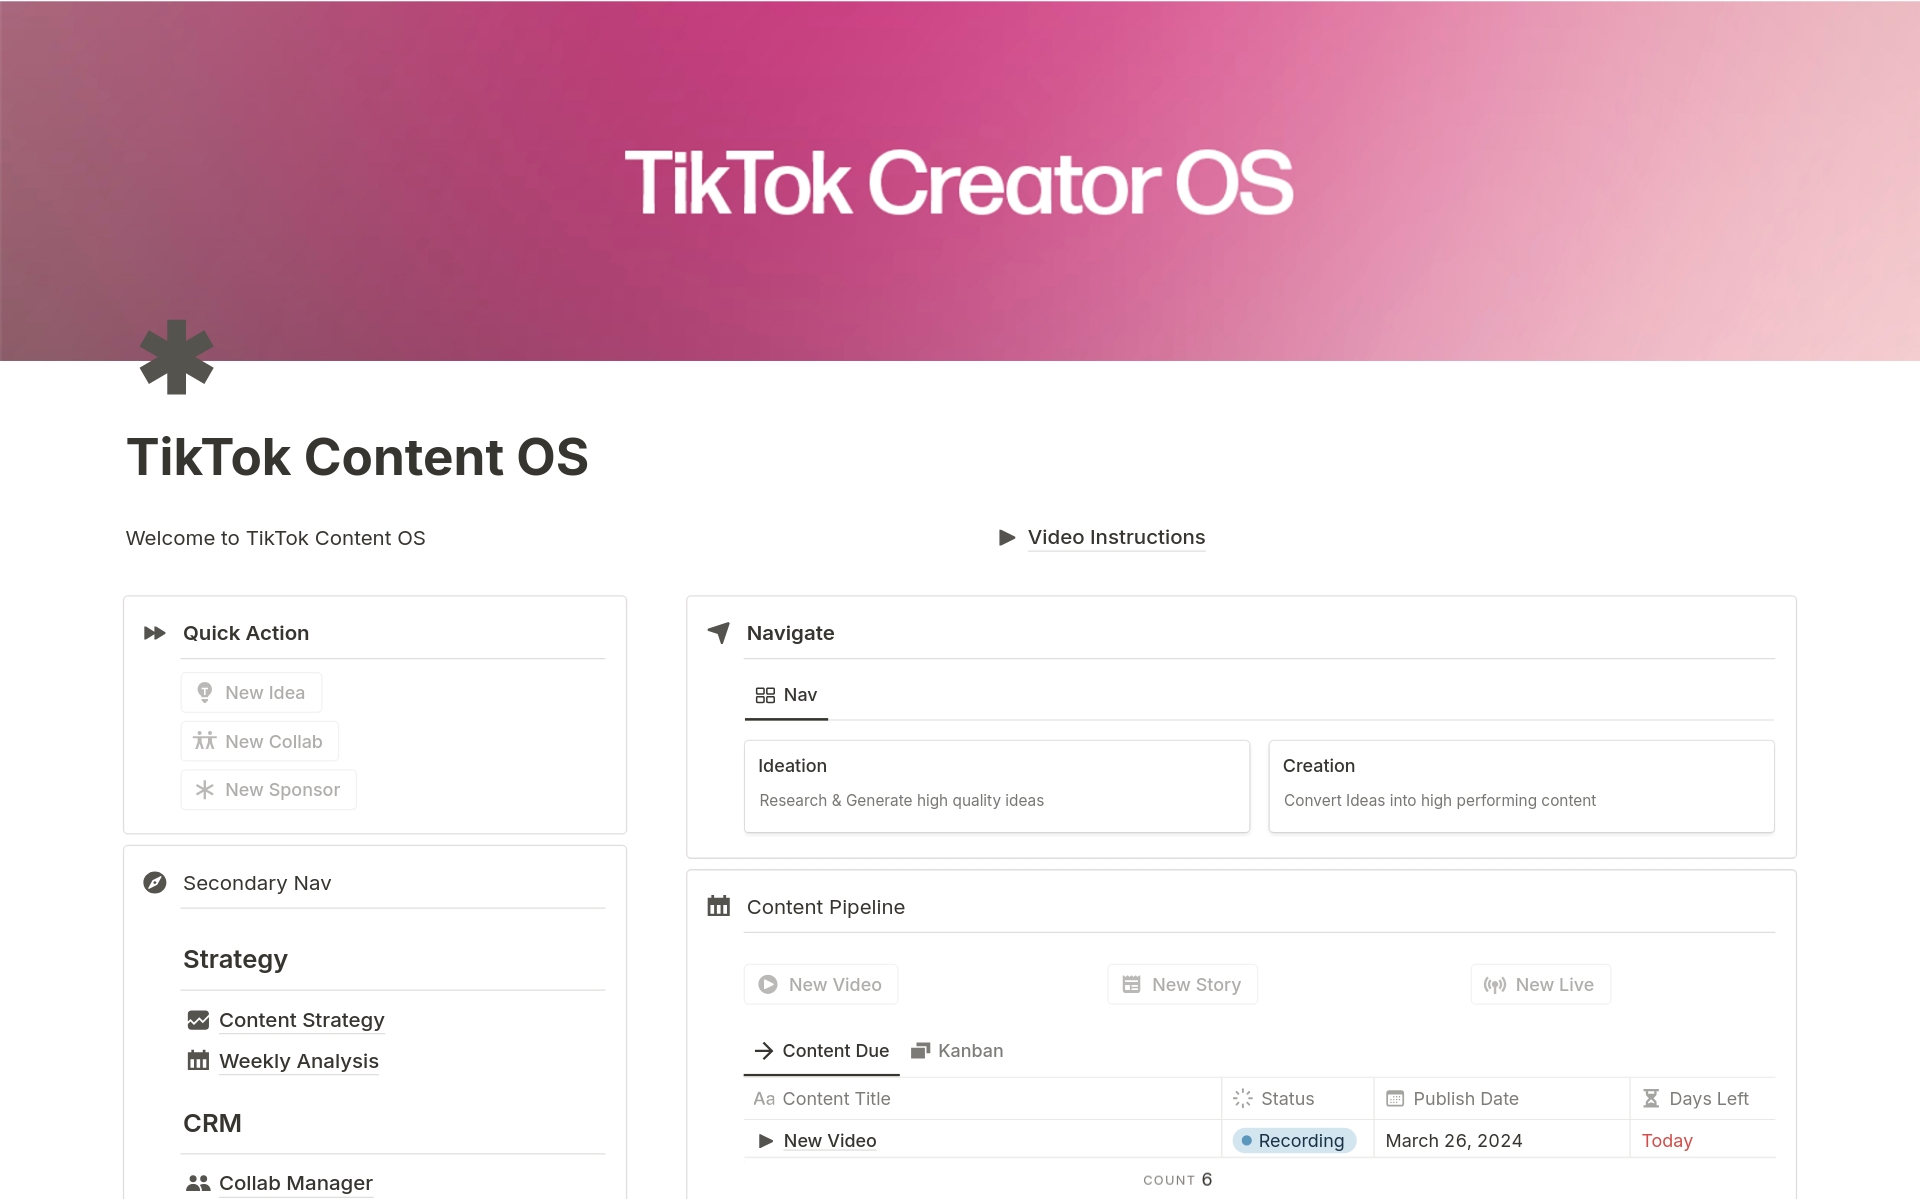 Vista previa de plantilla para TikTok Creator OS